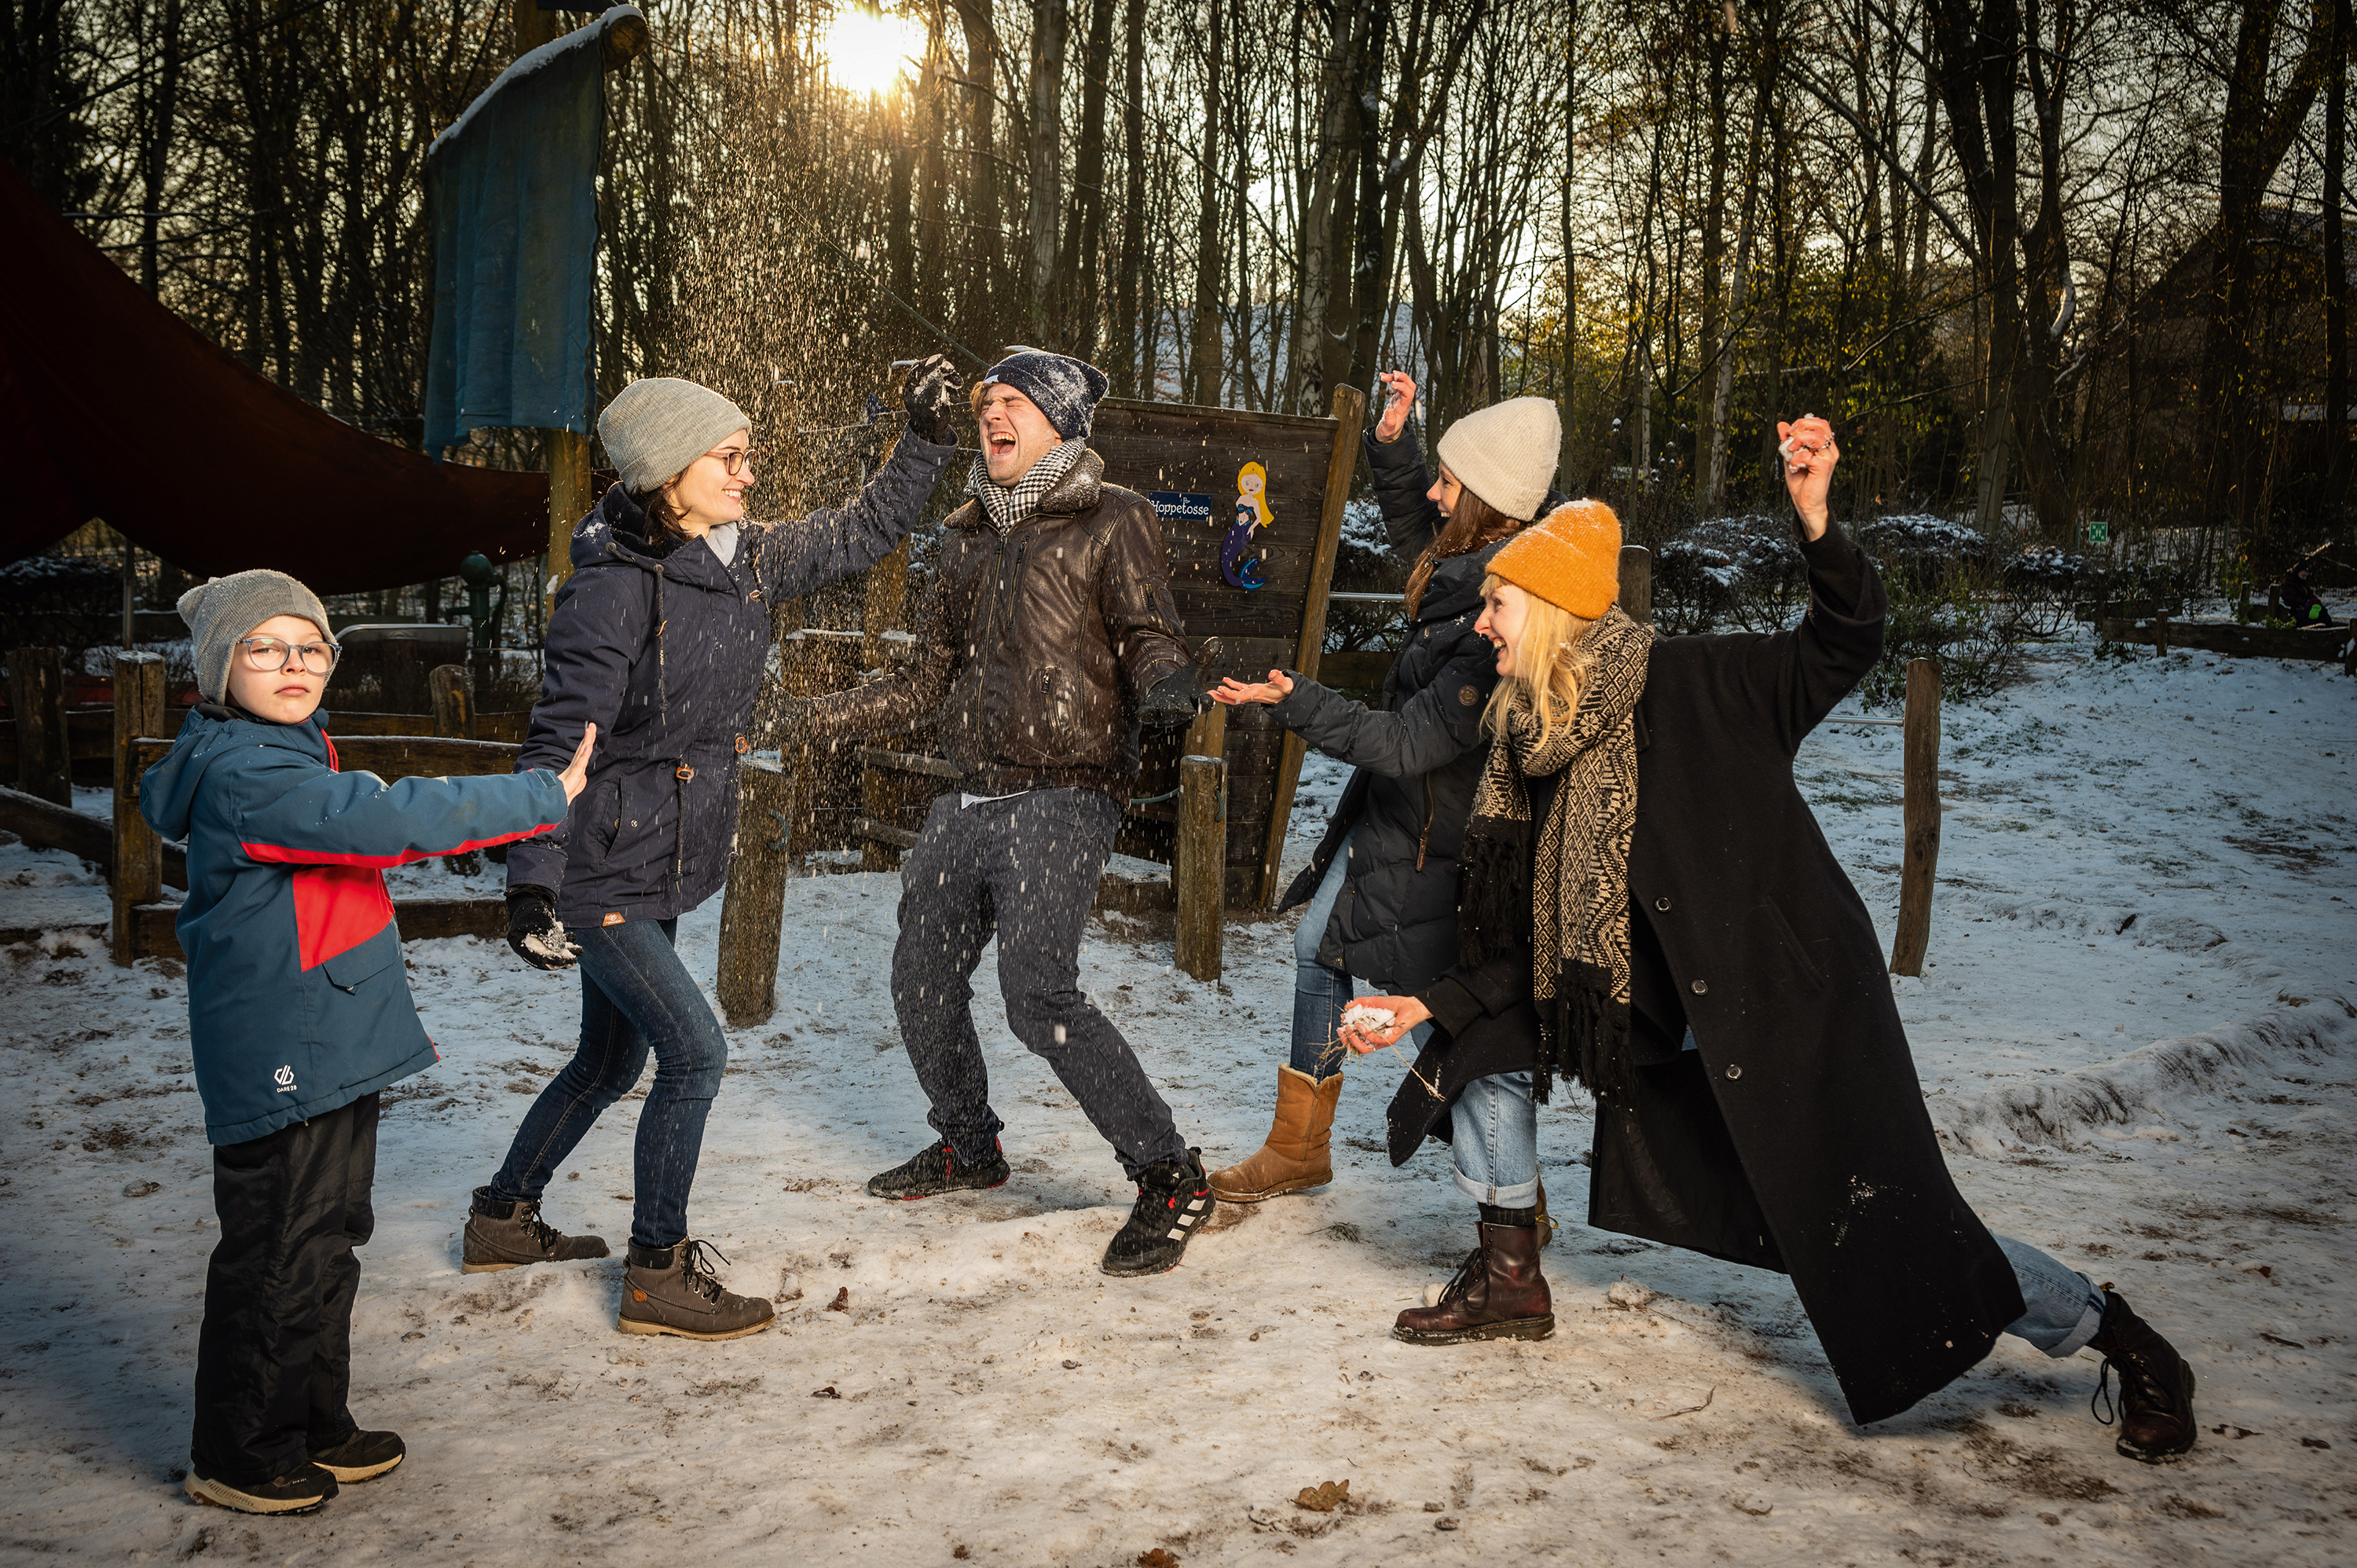 Ein Mann und drei Frauen bewerfen sich gegenseitig mit Schnee, ein Junge steht davor und streckt seine hochgehaltene Hand in ihre Richtung.